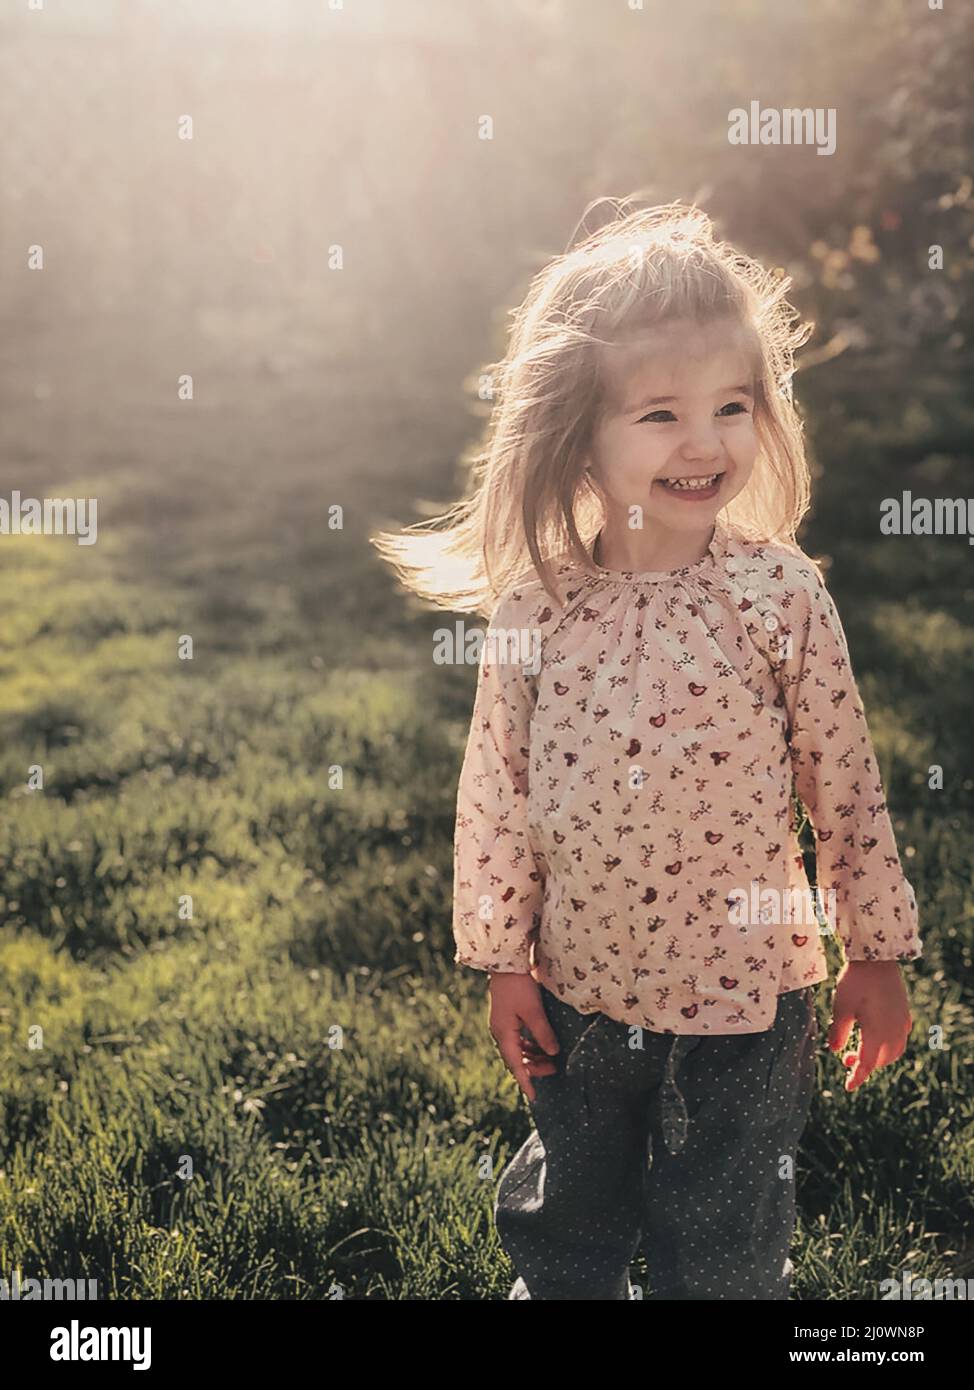 Nahaufnahme Foto von lächelnd niedlichen kleinen Mädchen von 3-4 Jahren mit blonden flauschigen Haaren steht im Freien Stockfoto